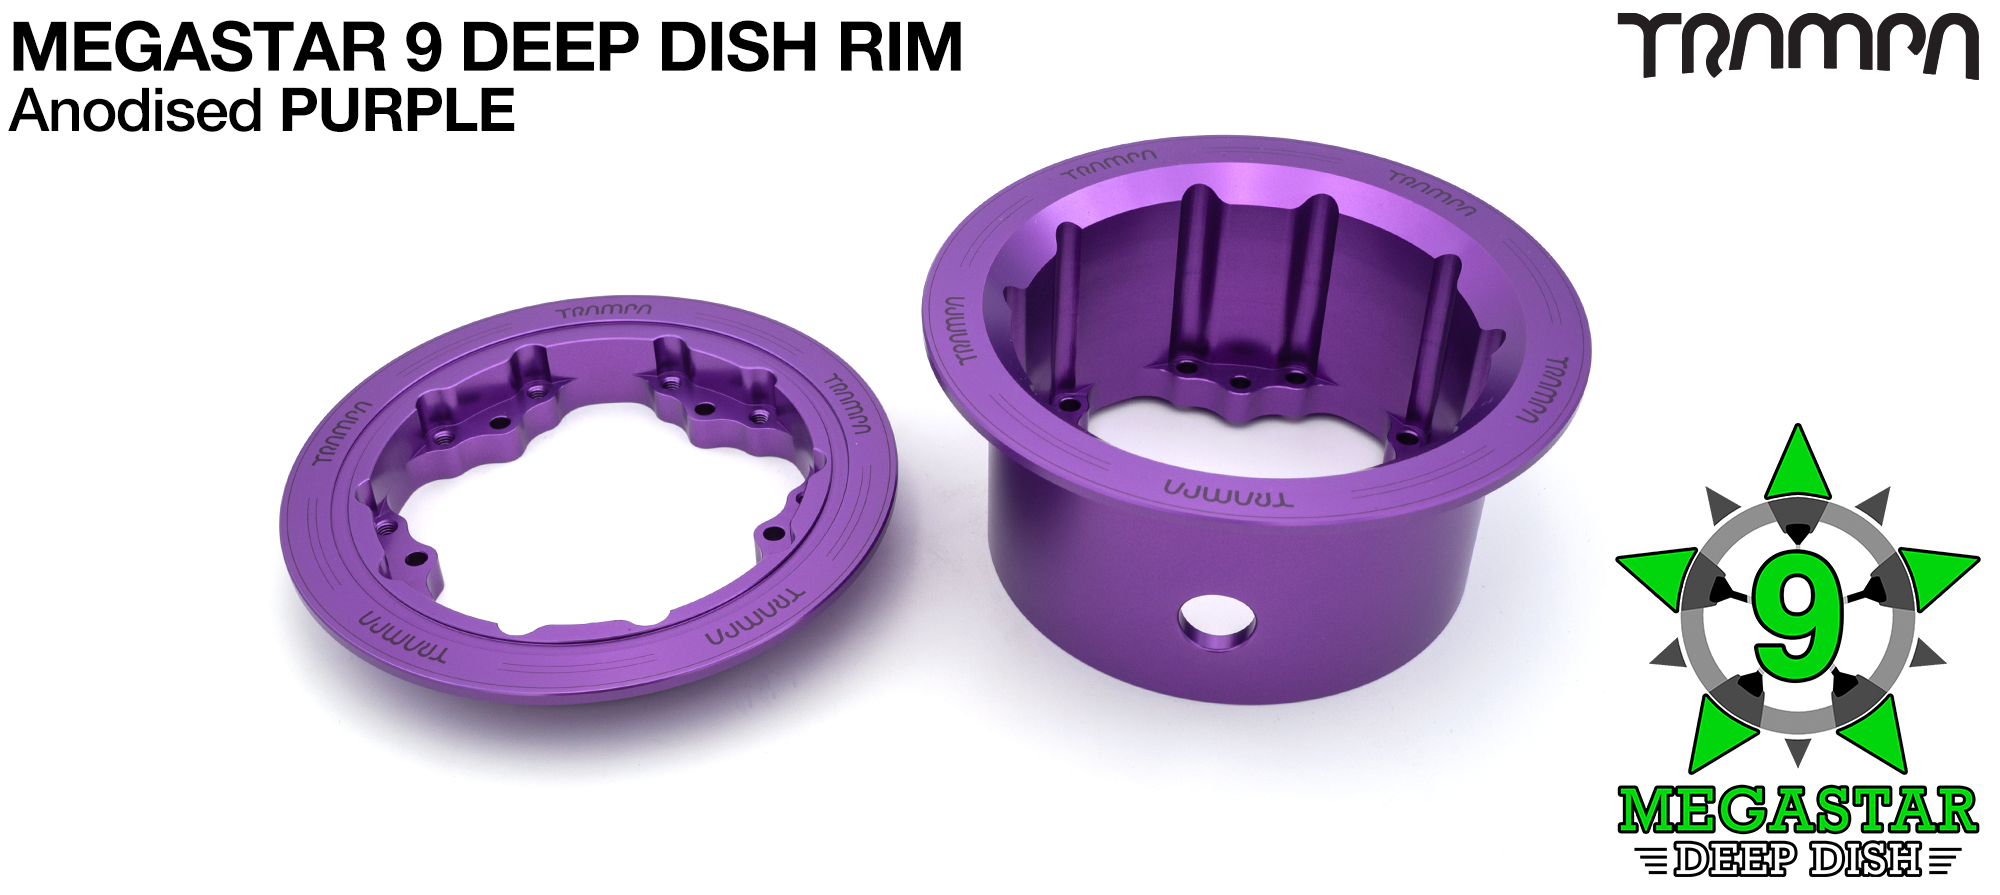 3.75/4x 3 inch DEEP-DISH MEGASTAR 9 Rims - PURPLE 